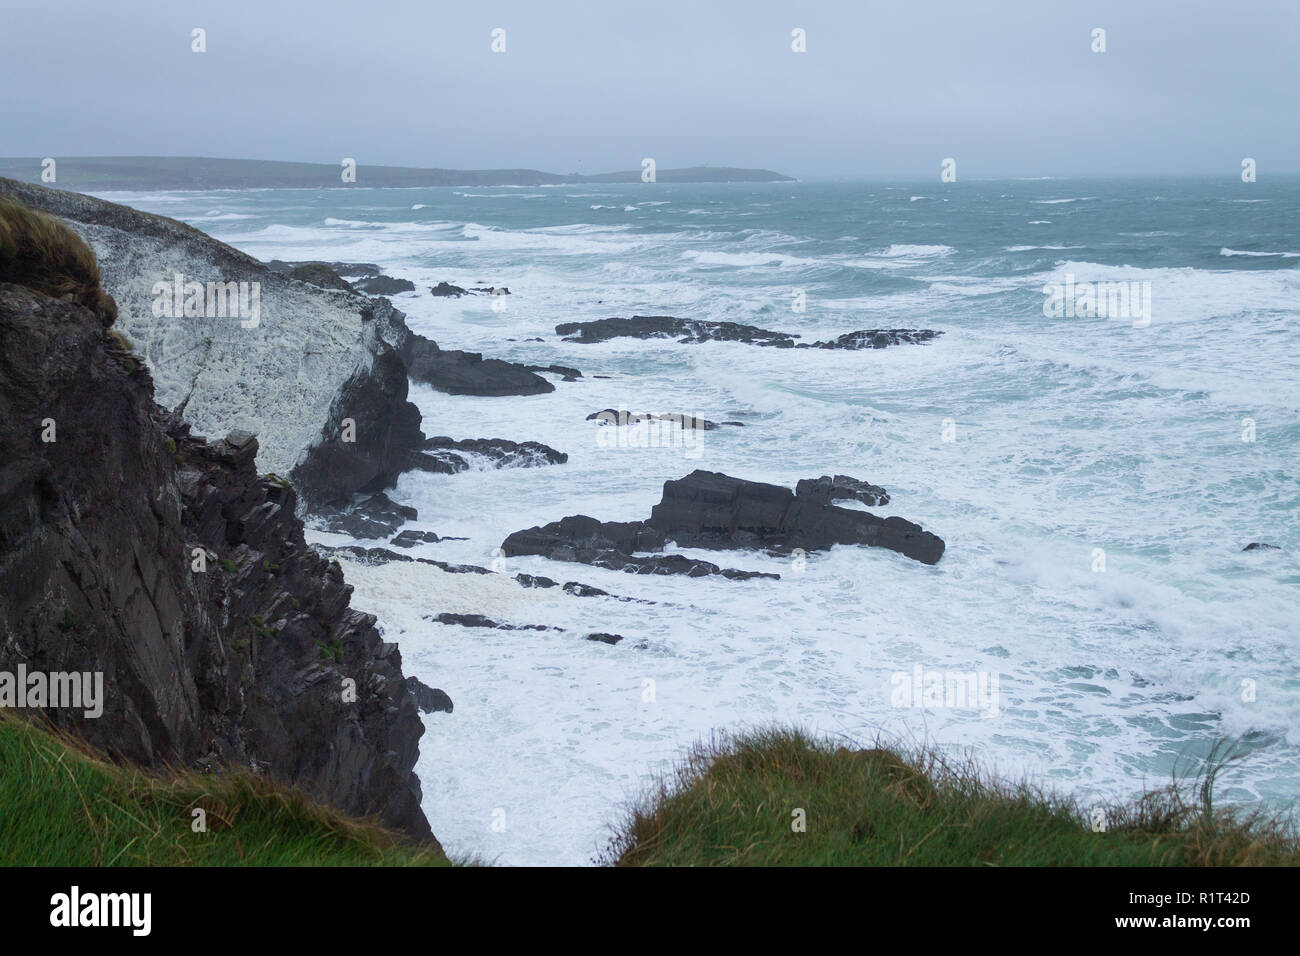 Mare mosso a copertura della scogliera in schiuma di mare da una tempesta. West Cork in Irlanda Foto Stock